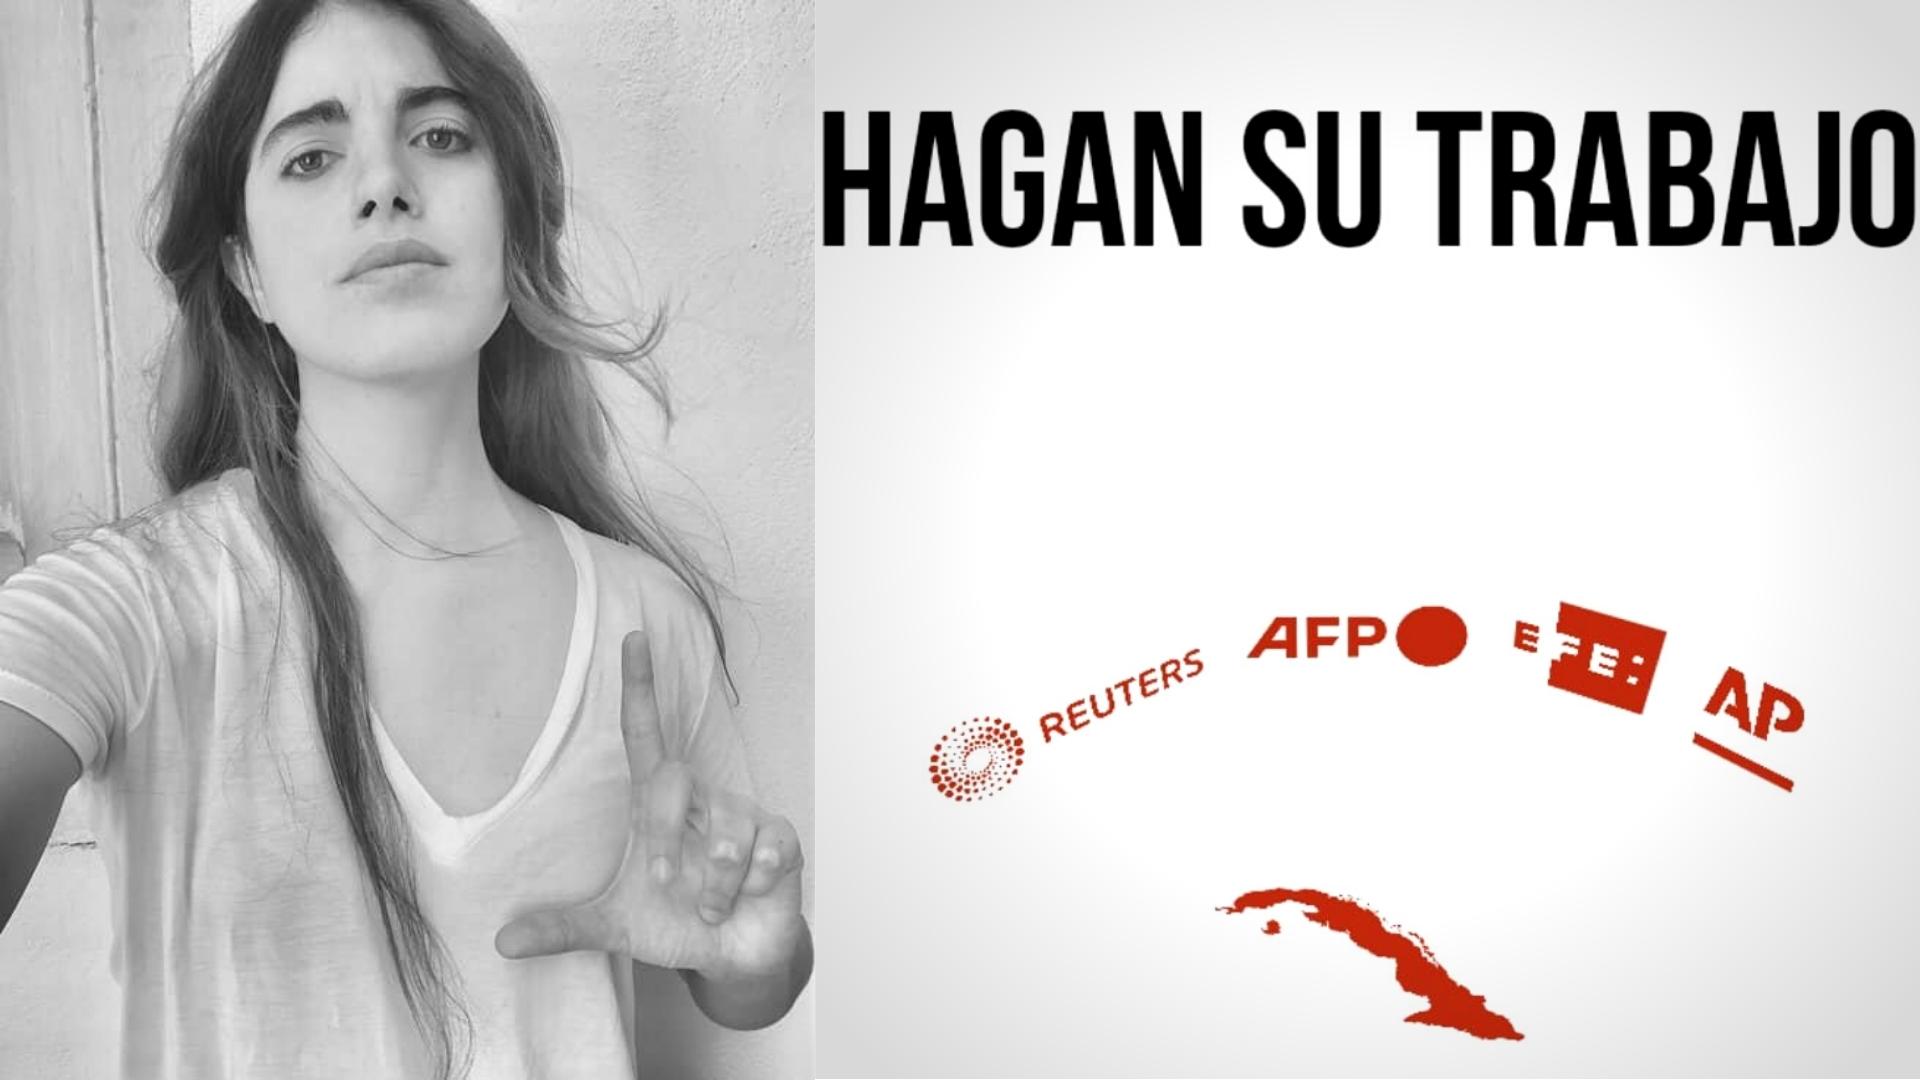 Carolina Barrero y cartel sobre medios extranjeros acreditados en Cuba